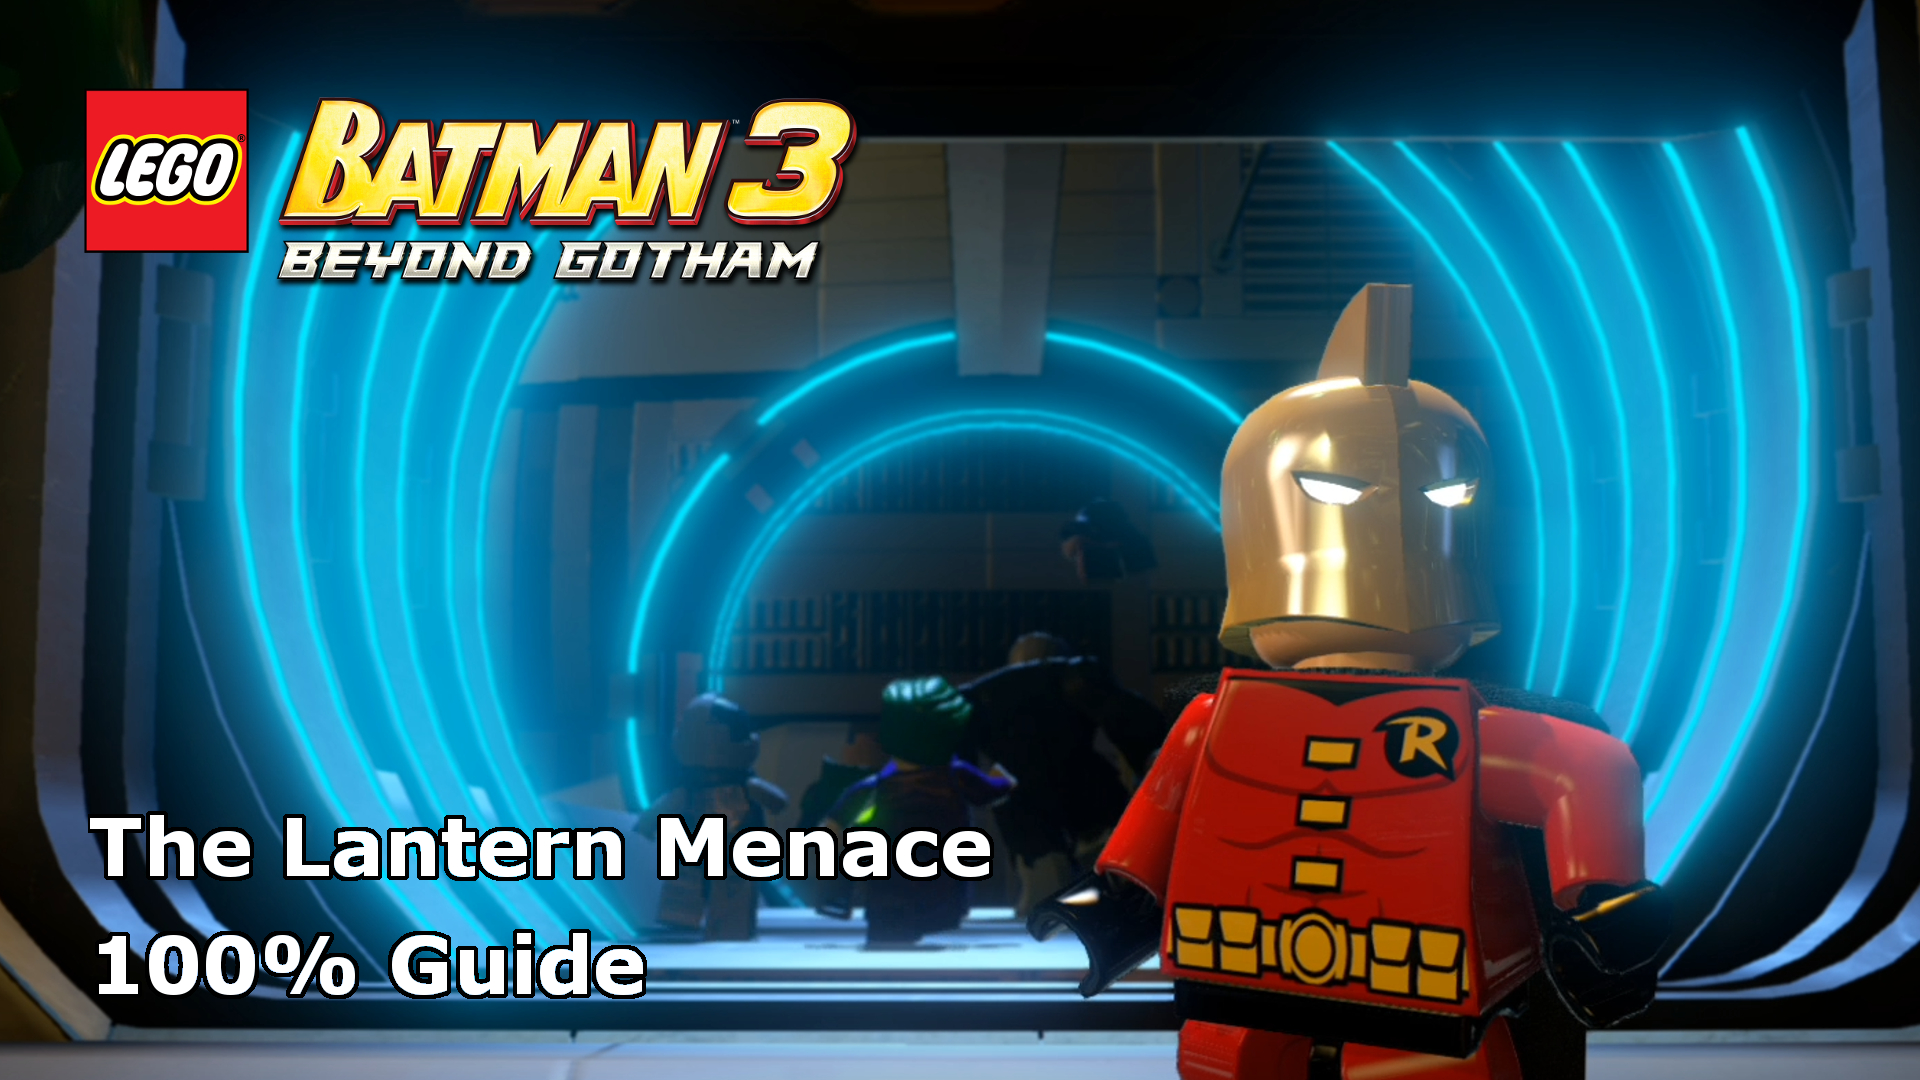 Lego Batman 3: Beyond Gotham – The Lantern Menace 100% Guide